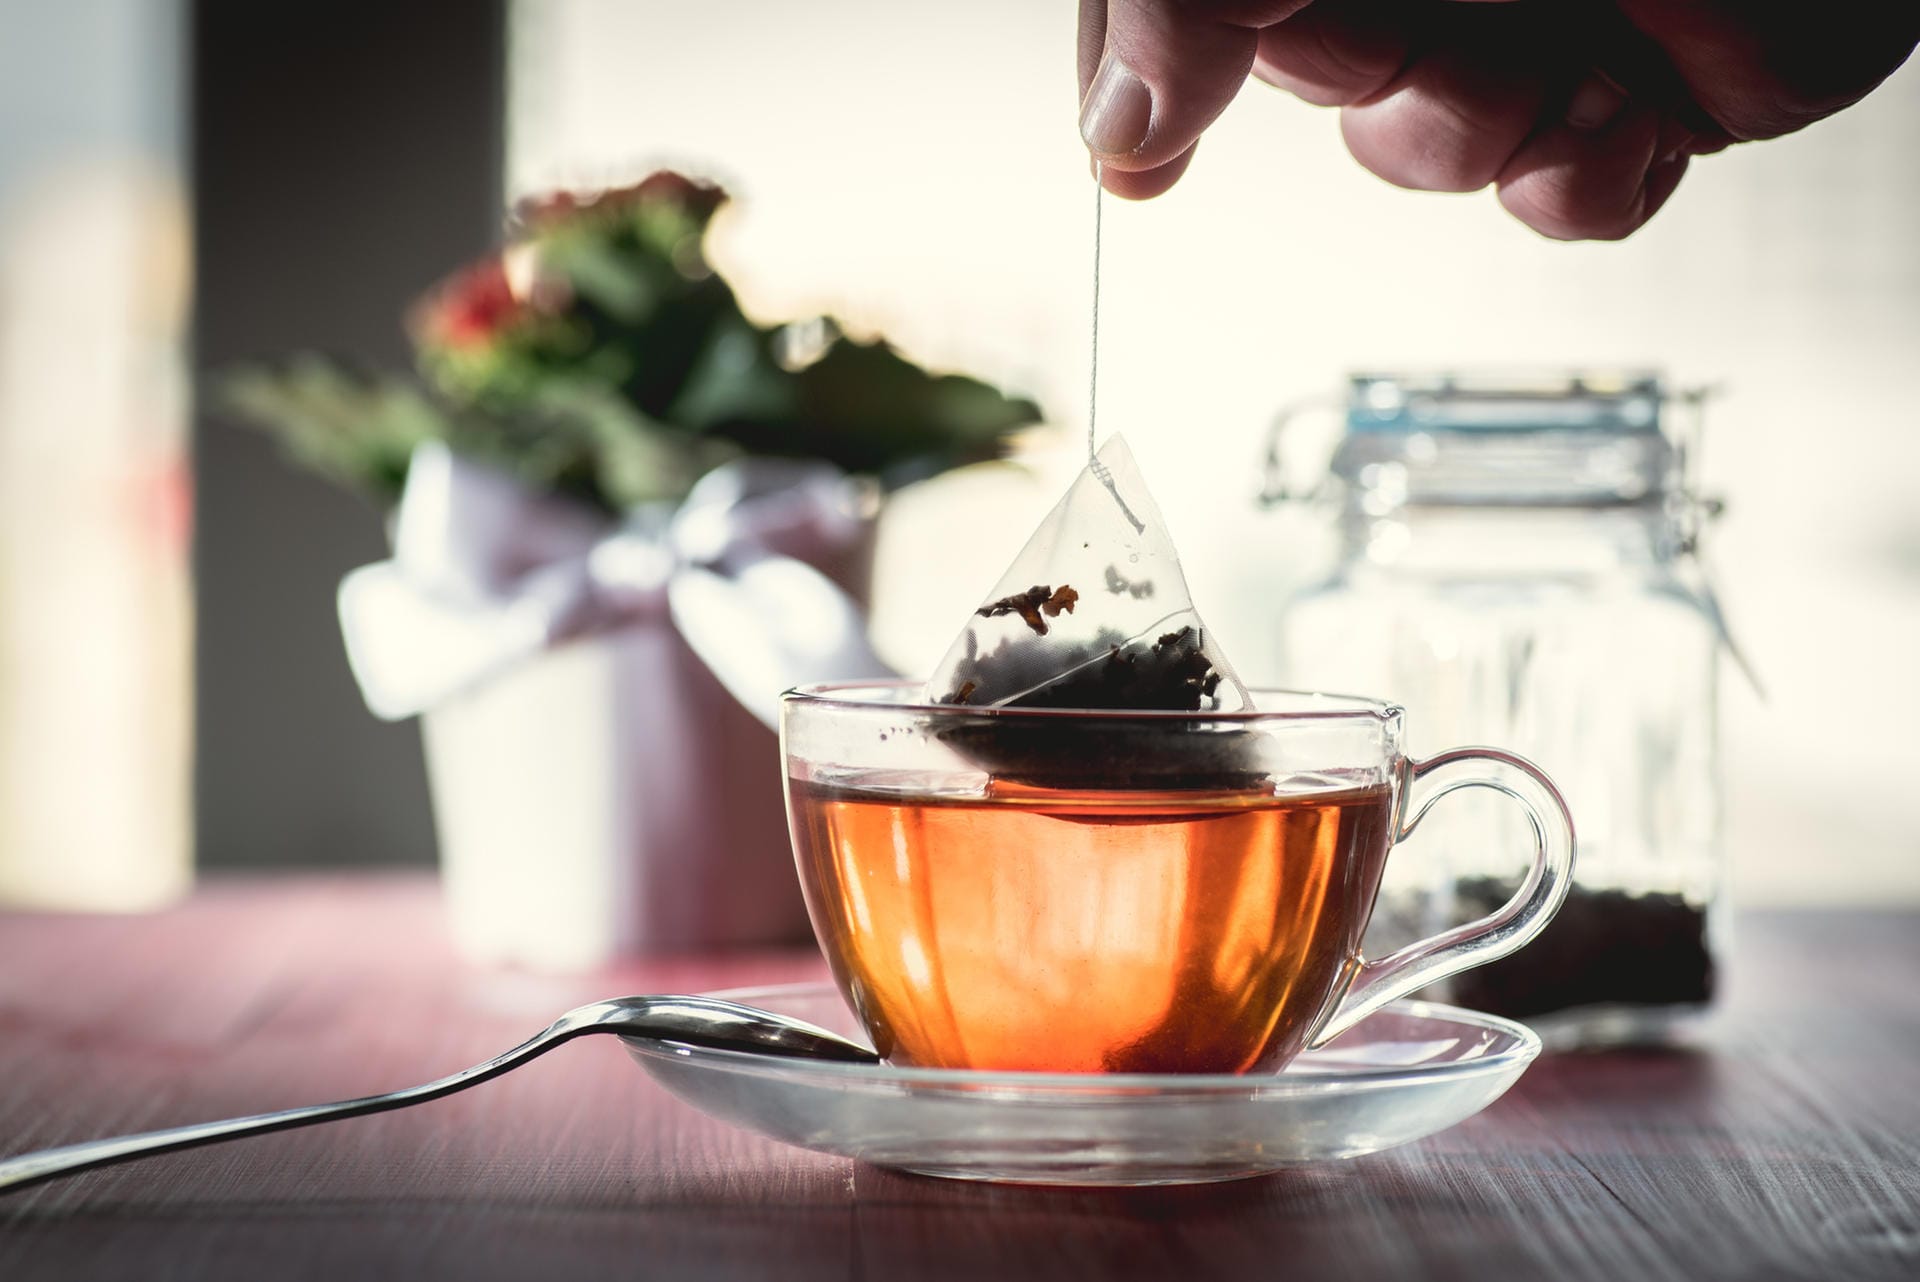 Dasselbe gilt für schwarzen und grünen Tee. Sie zählen zwar wie Kaffee und Wasser zur Flüssigkeitsbilanz – solange kein Zucker drin ist. Sie sind aber in erster Linie Genussmittel.